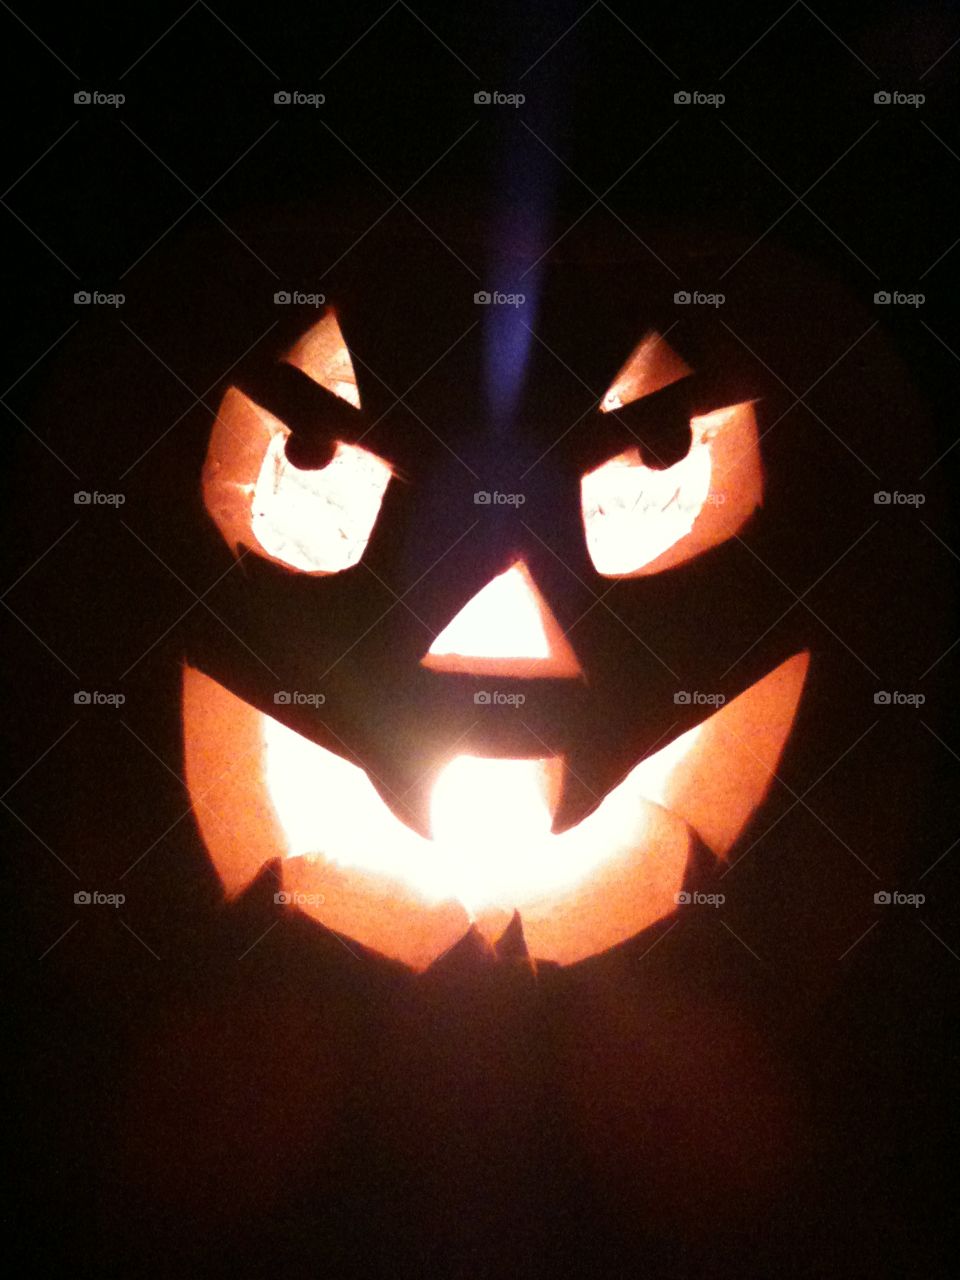 Smiley Halloween pumpkin lit with tea lights 

